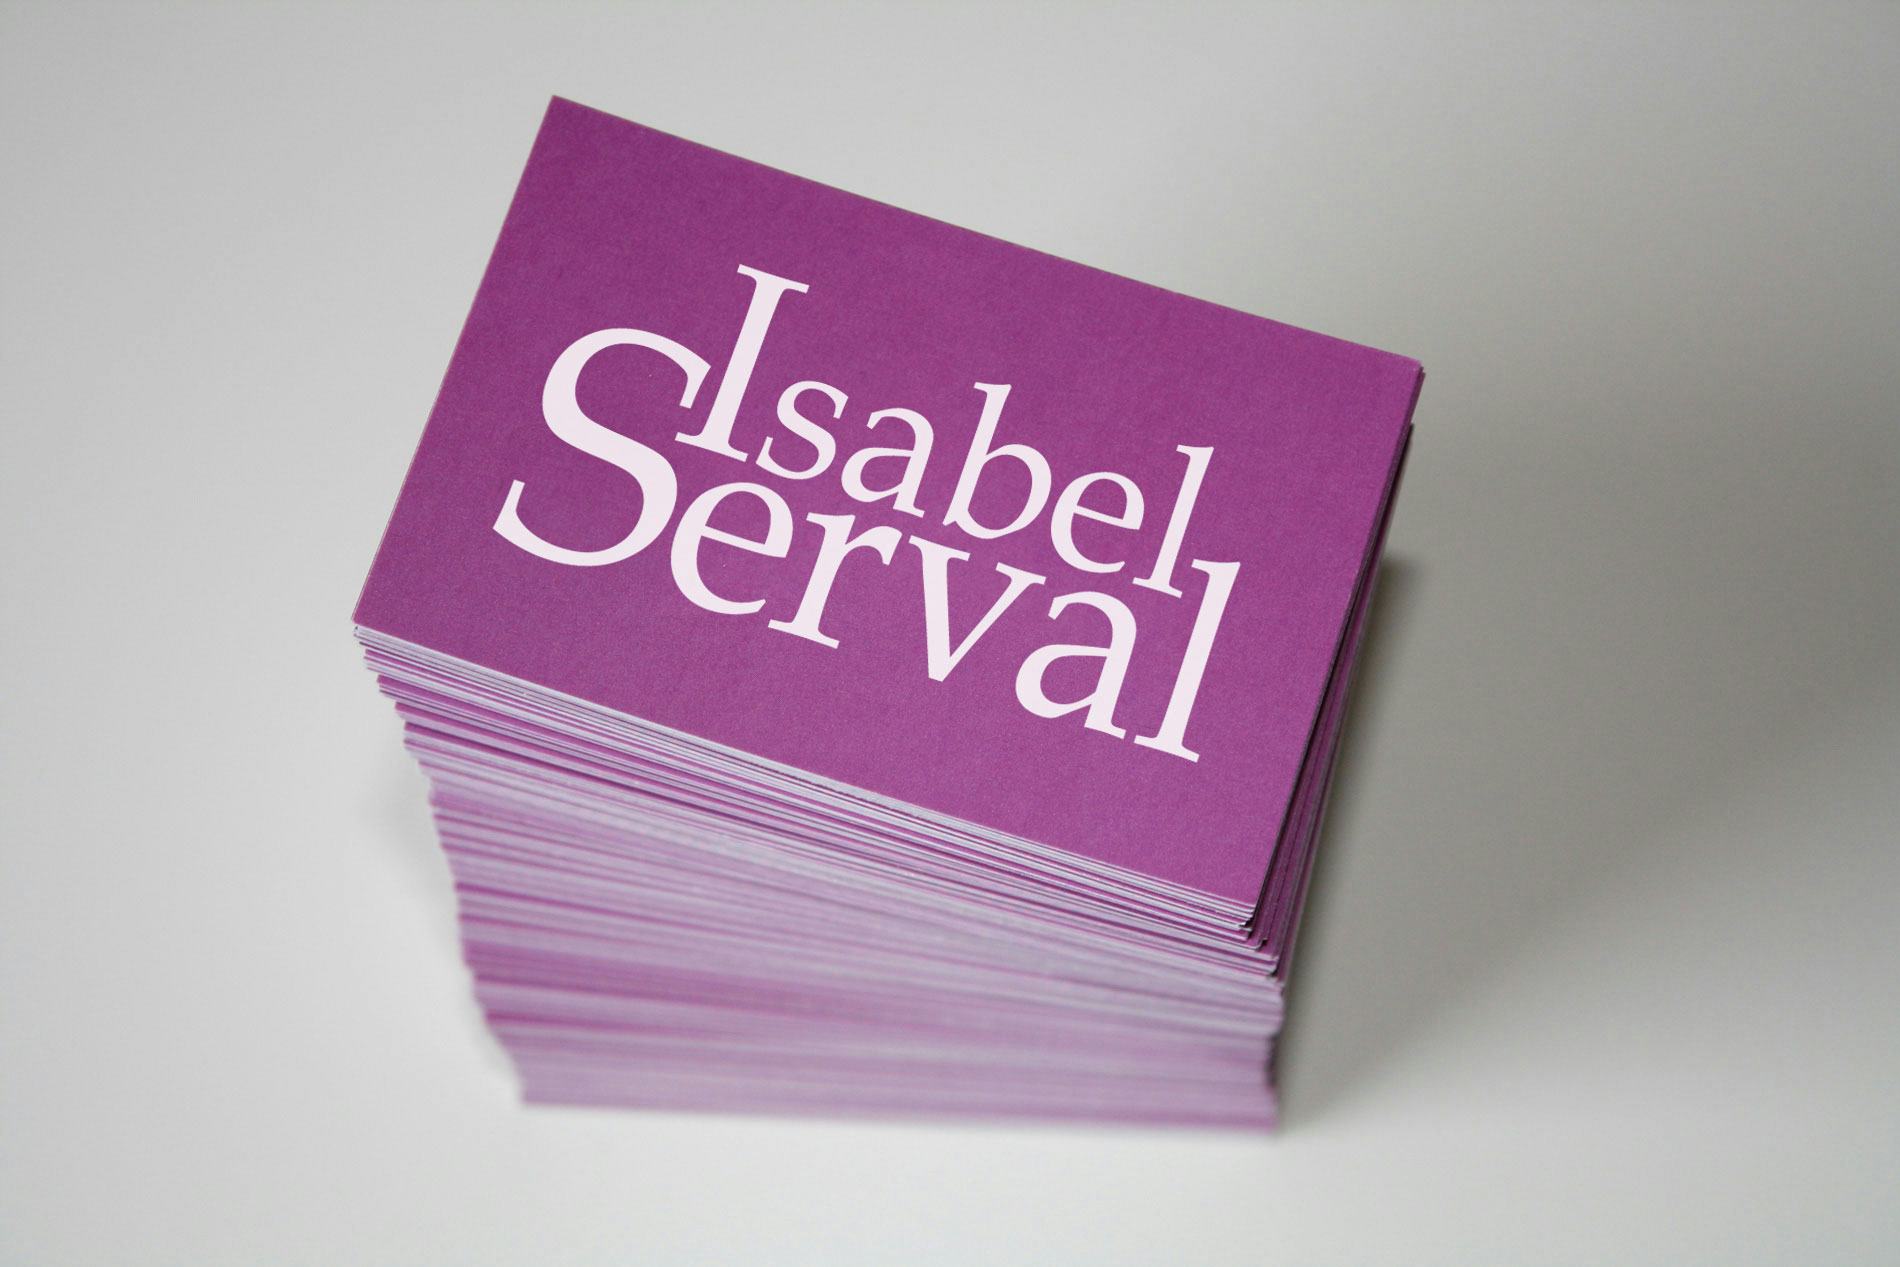 Isabel Serval